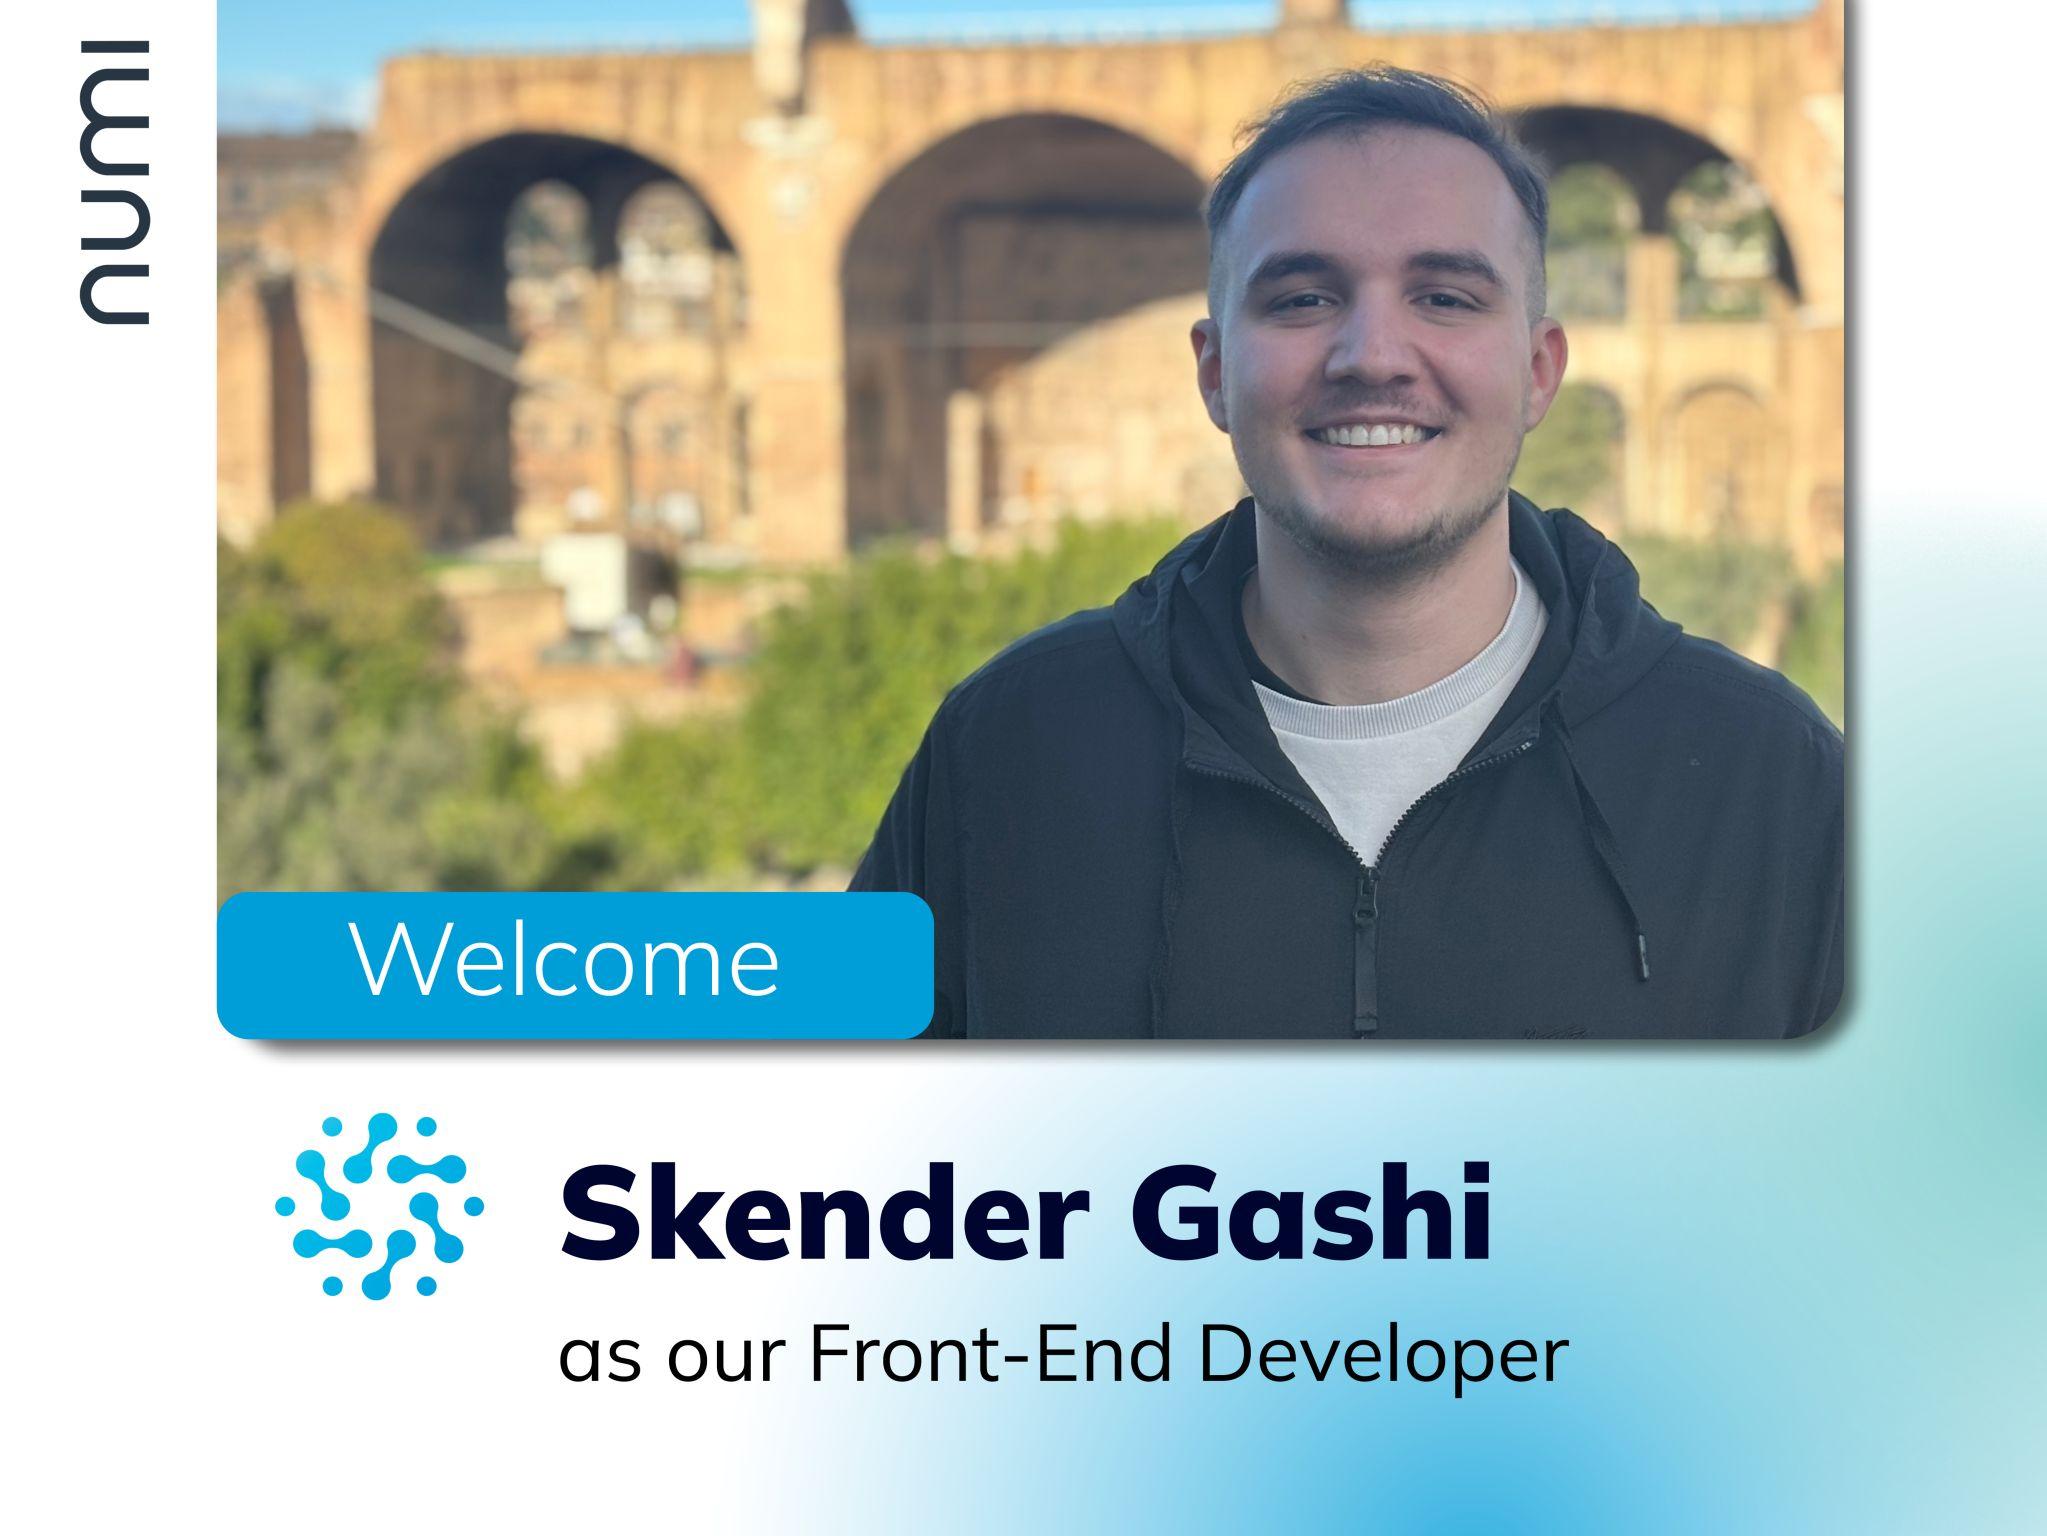 Willkommen im Team, Skender Gashi!